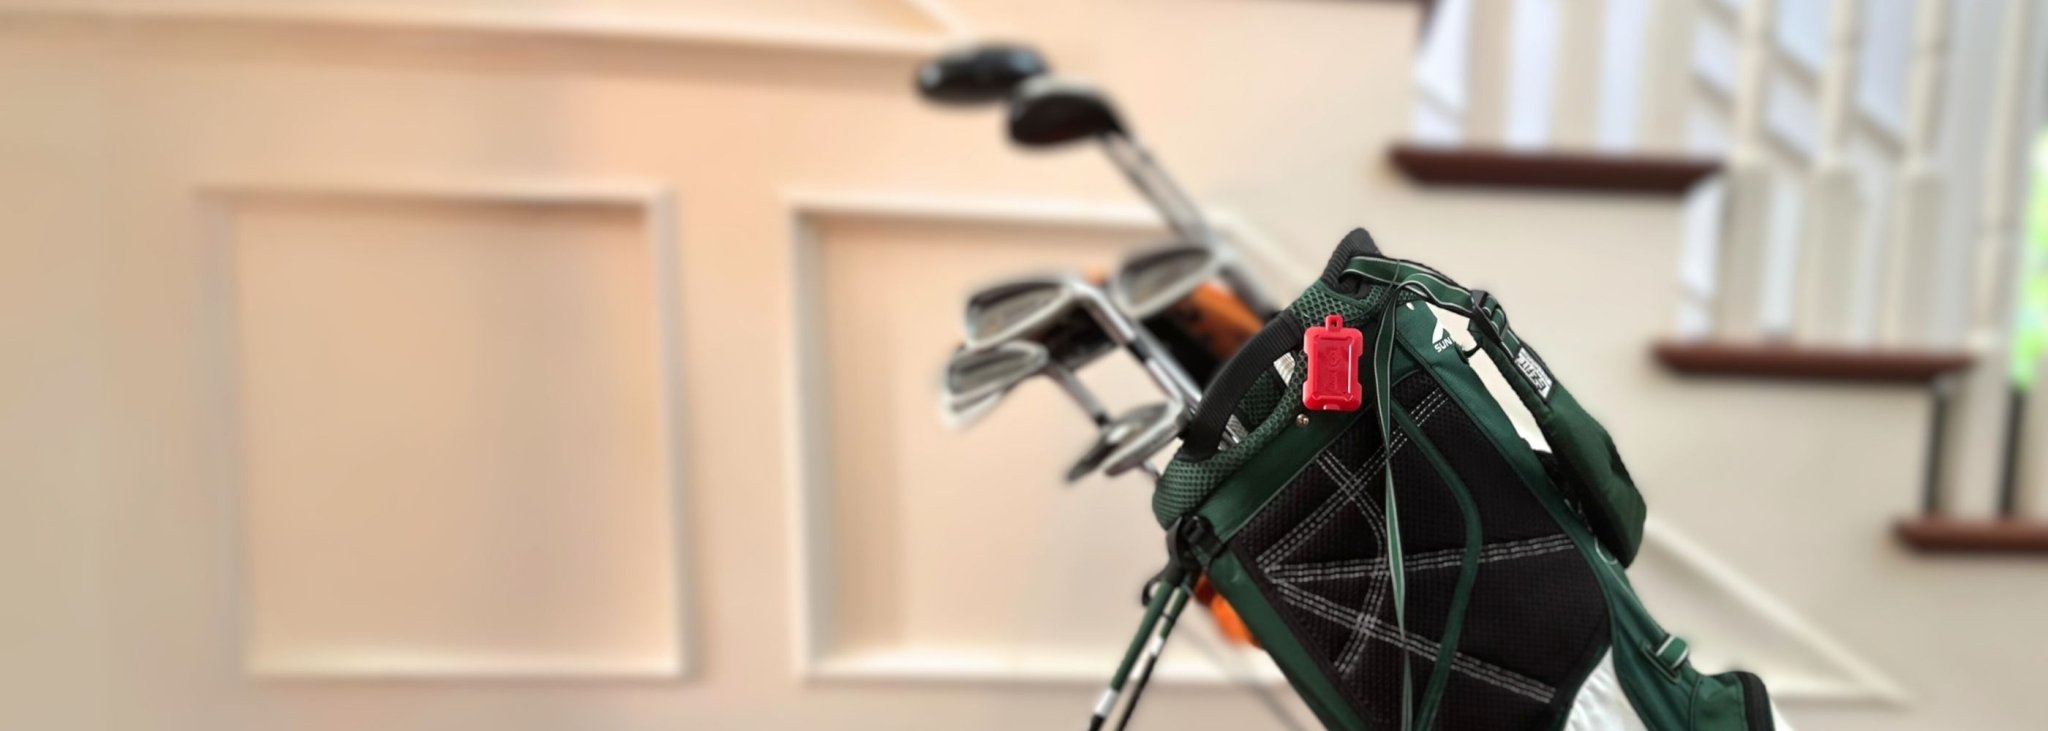 Red Kini Wireless Motion Sensor tethered to golf bag